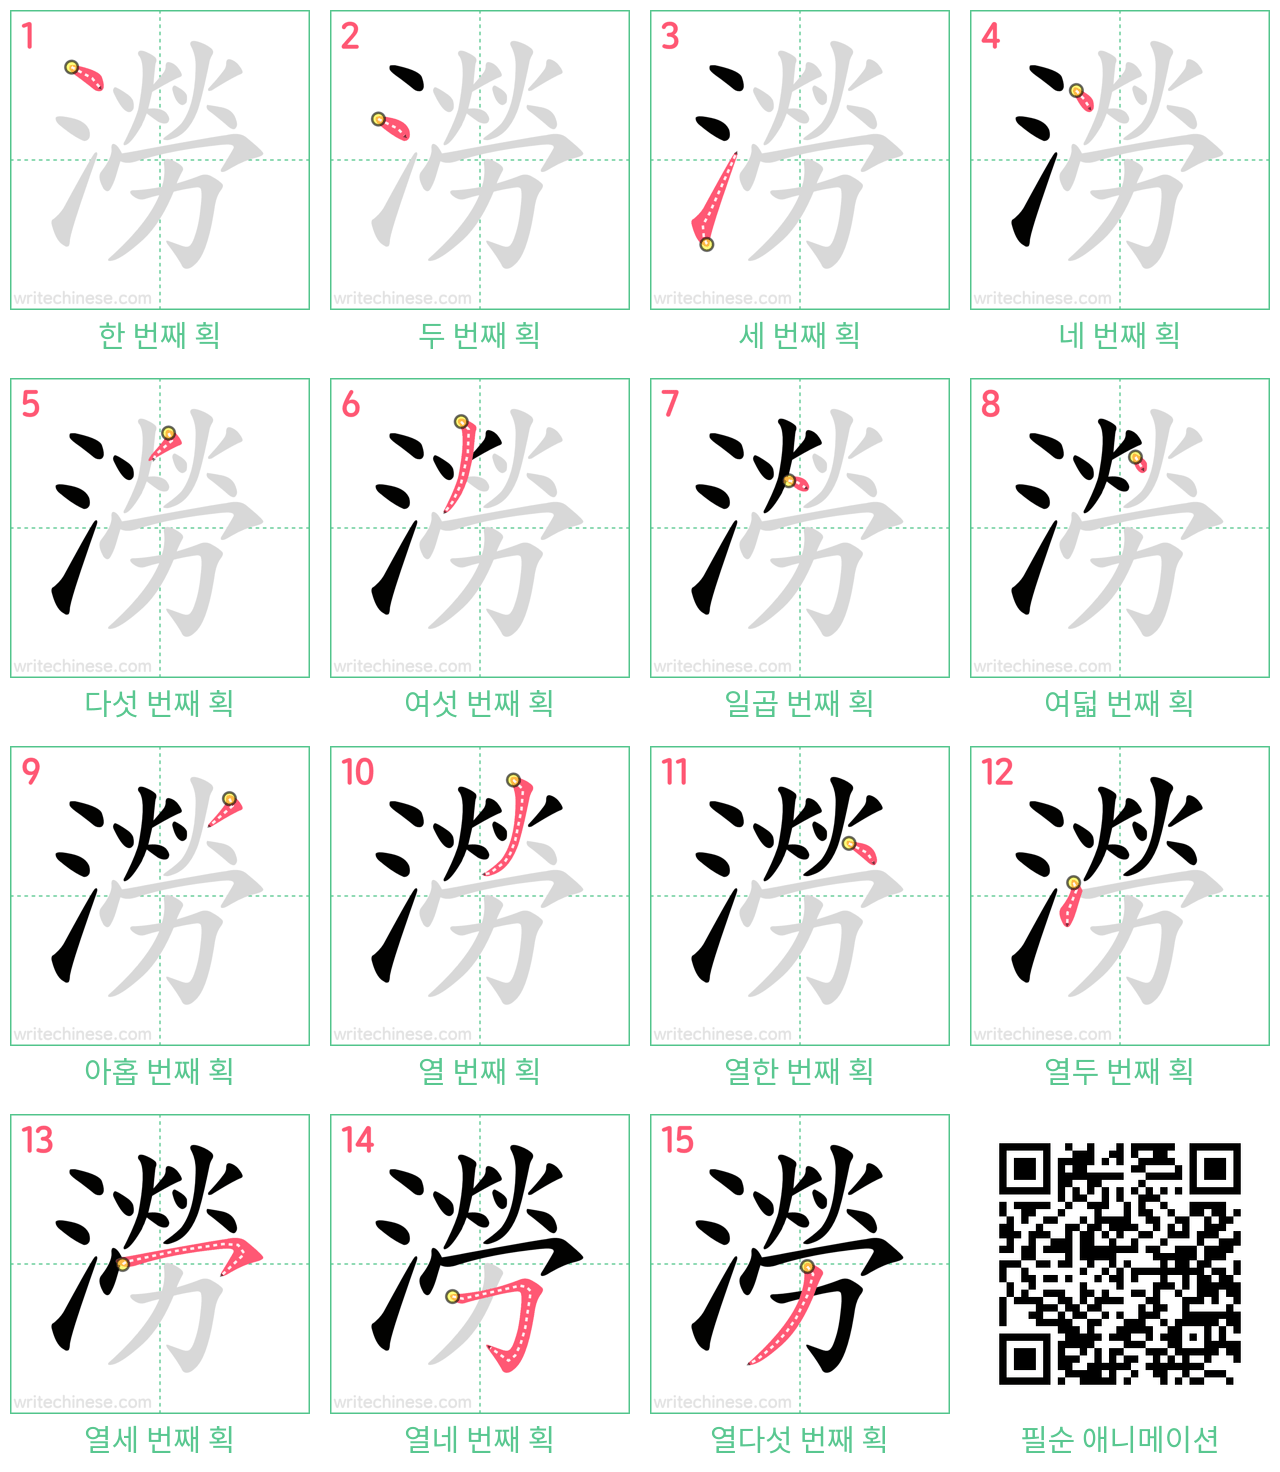 澇 step-by-step stroke order diagrams